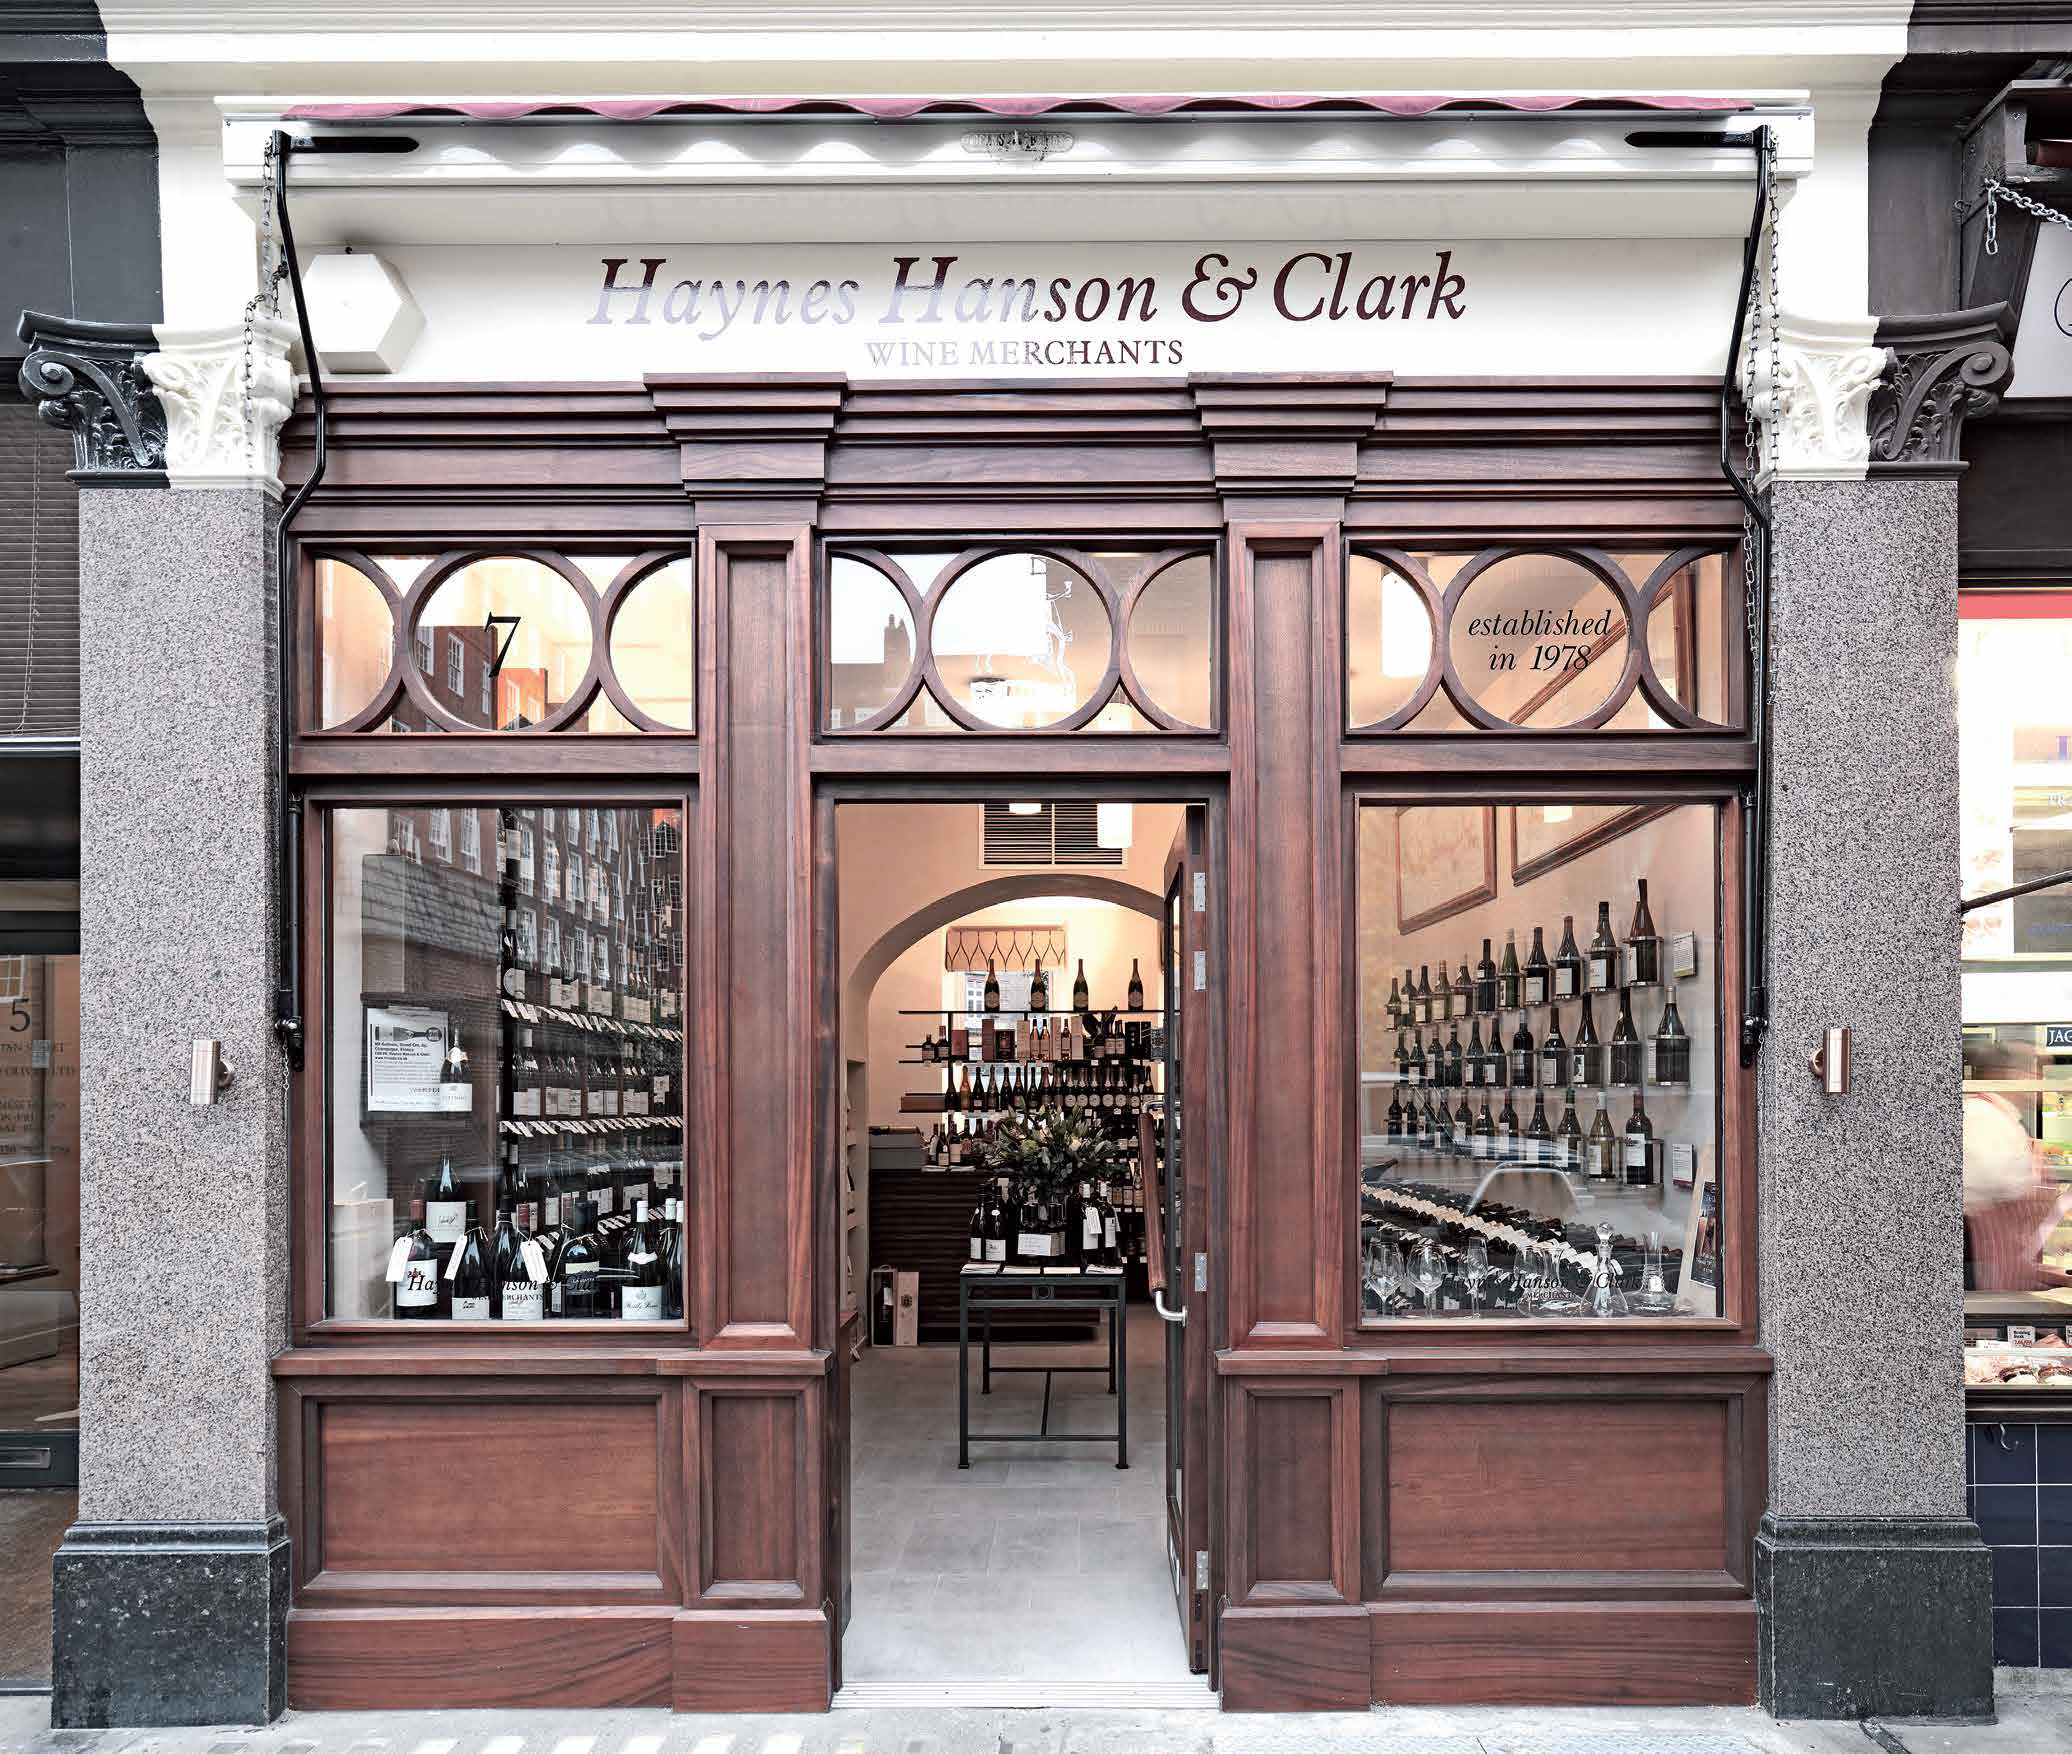 Haynes Hanson & Clark - Wine Merchants